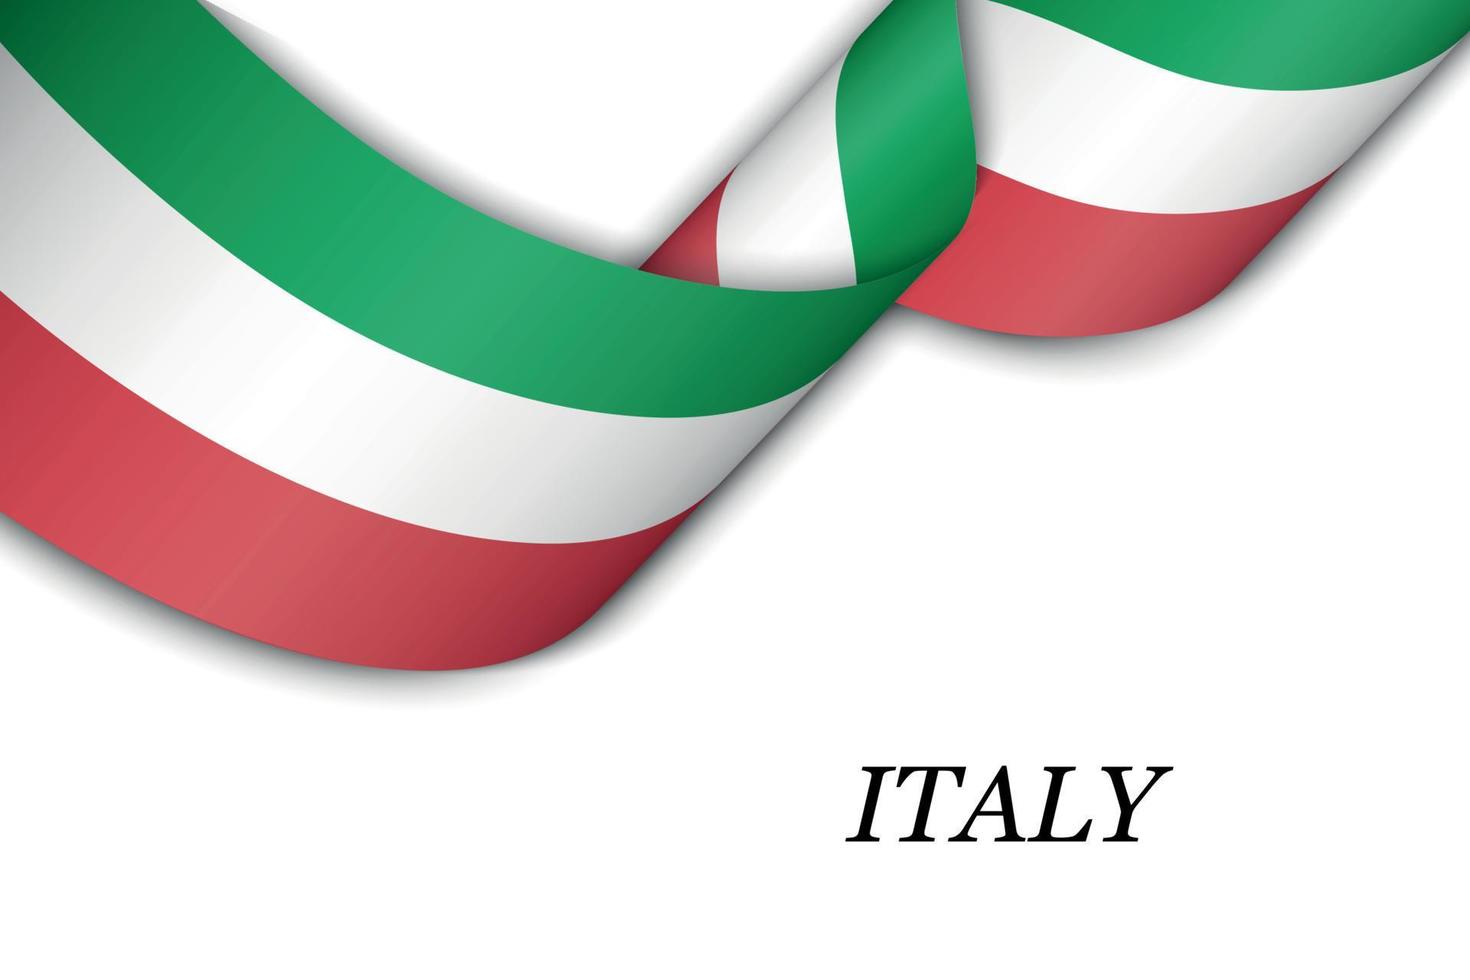 agitant un ruban ou une bannière avec le drapeau de l'italie vecteur